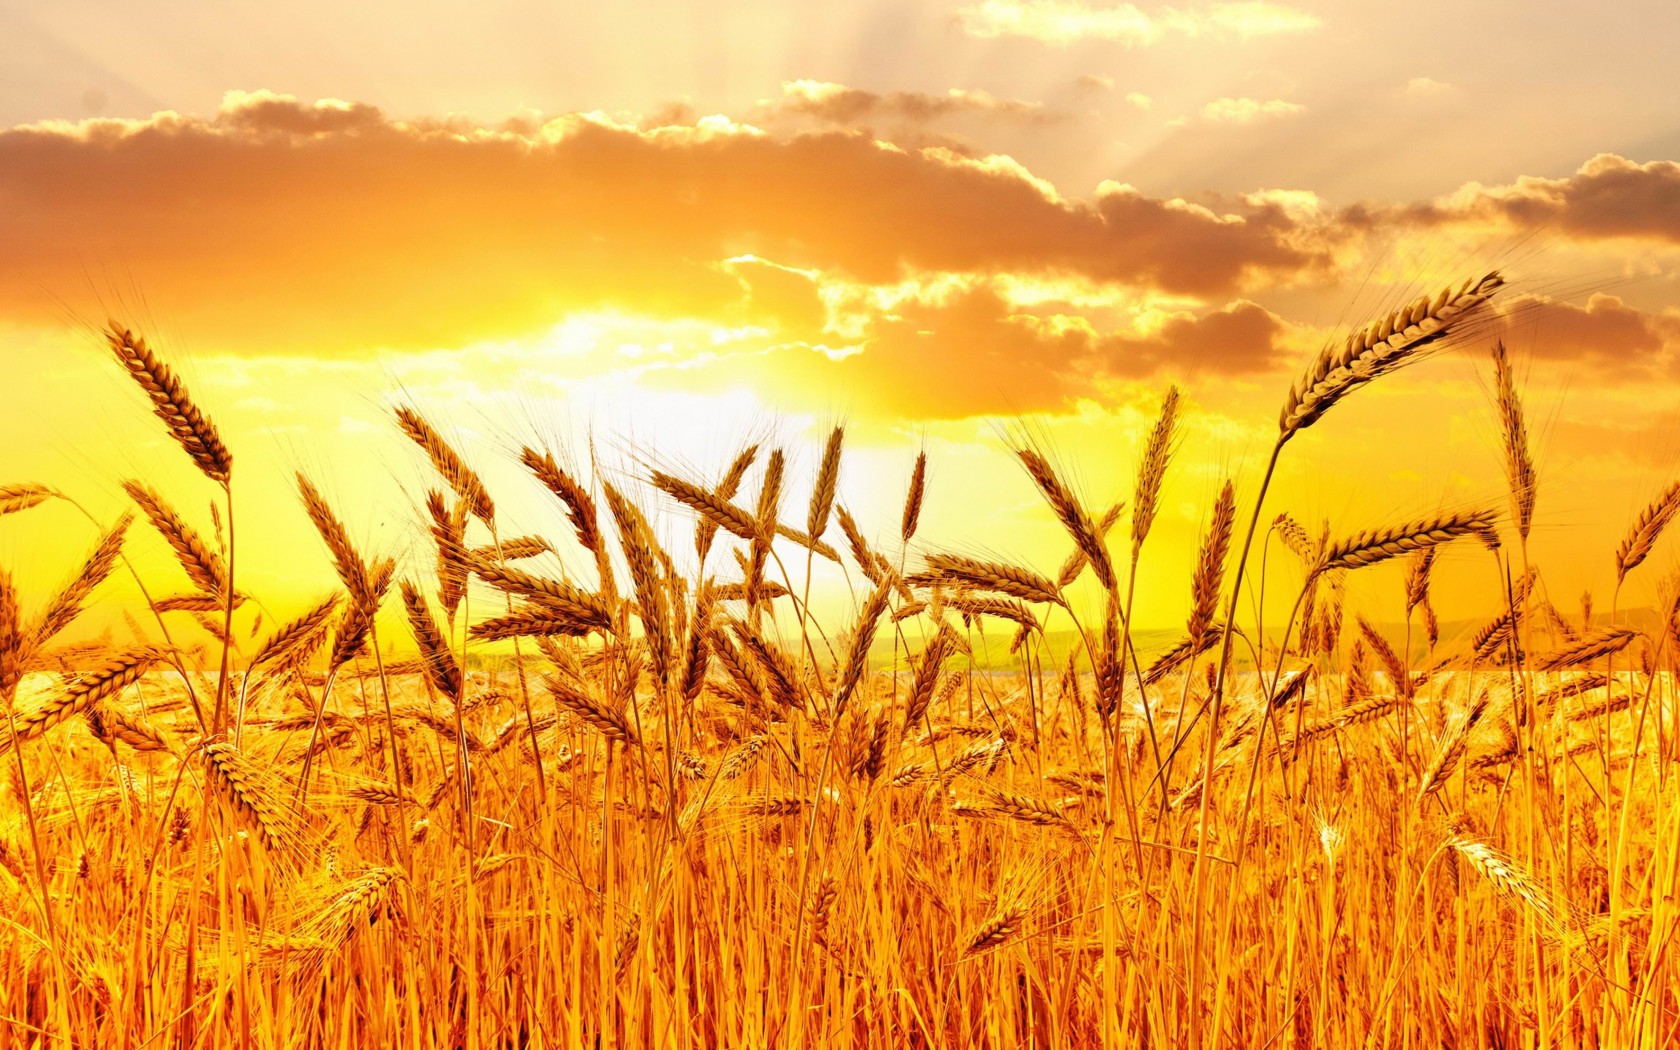 Golden Wheat Field At Sunset Wallpaper for Desktop 1680x1050